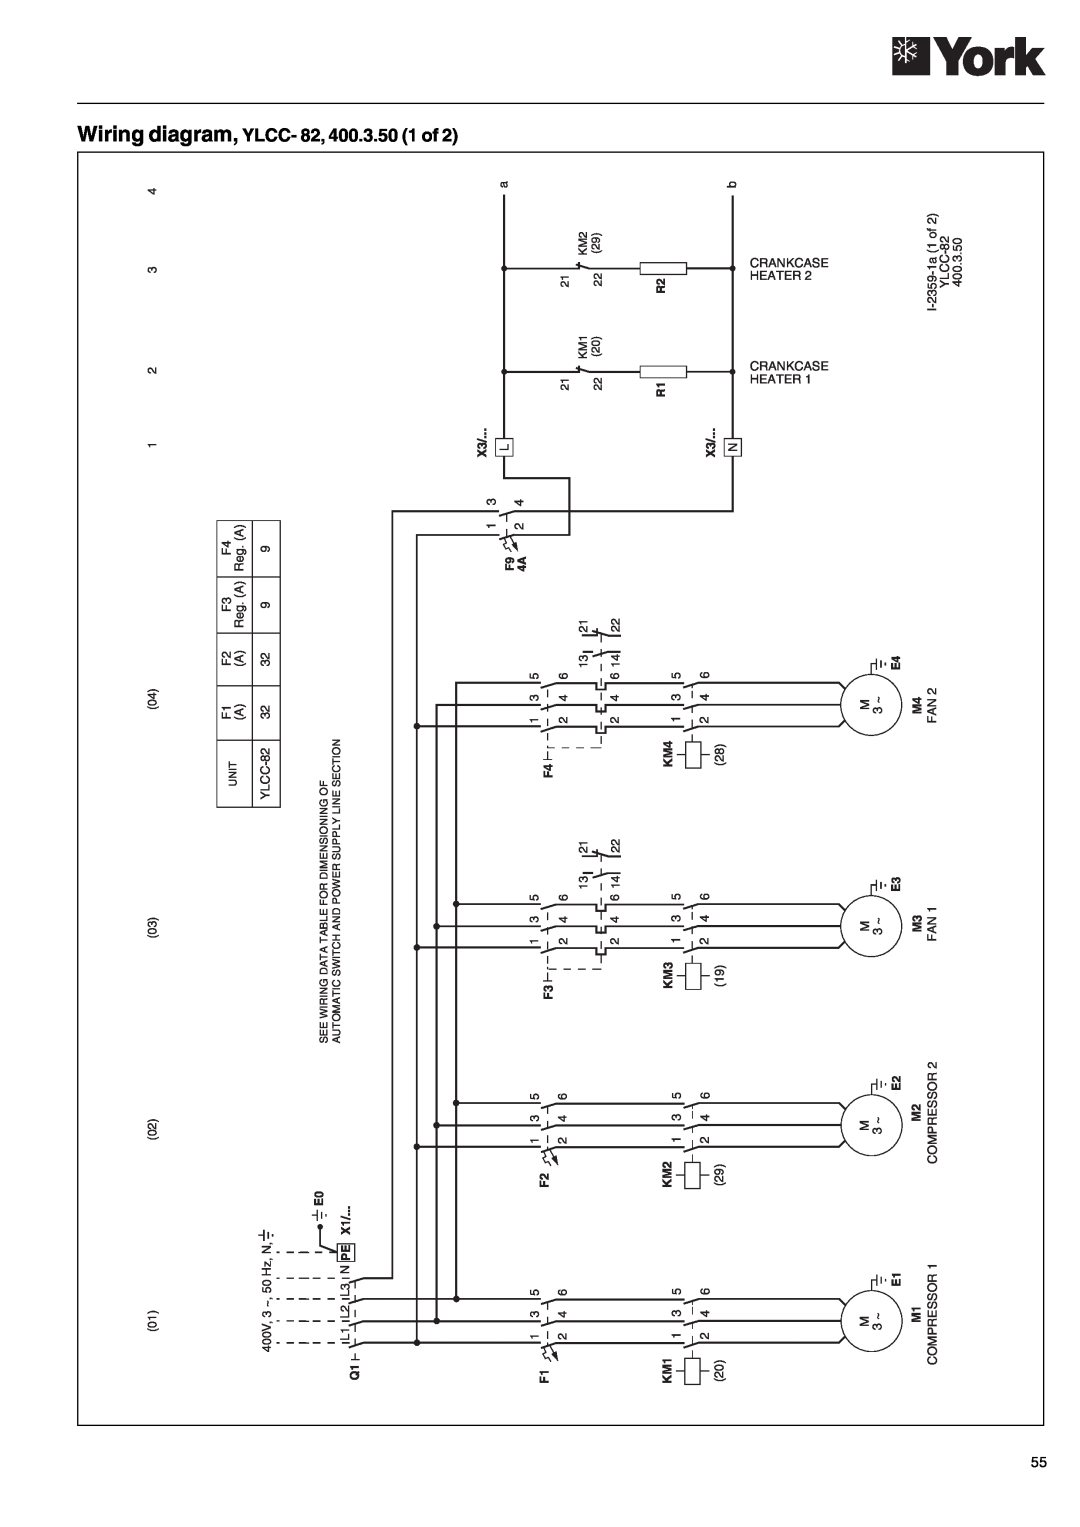 York 152, YLCC 42/62/82/102/112, YLCC-h, 122 manual Wiring diagram, YLCC- 82, 400.3.50 1 of 